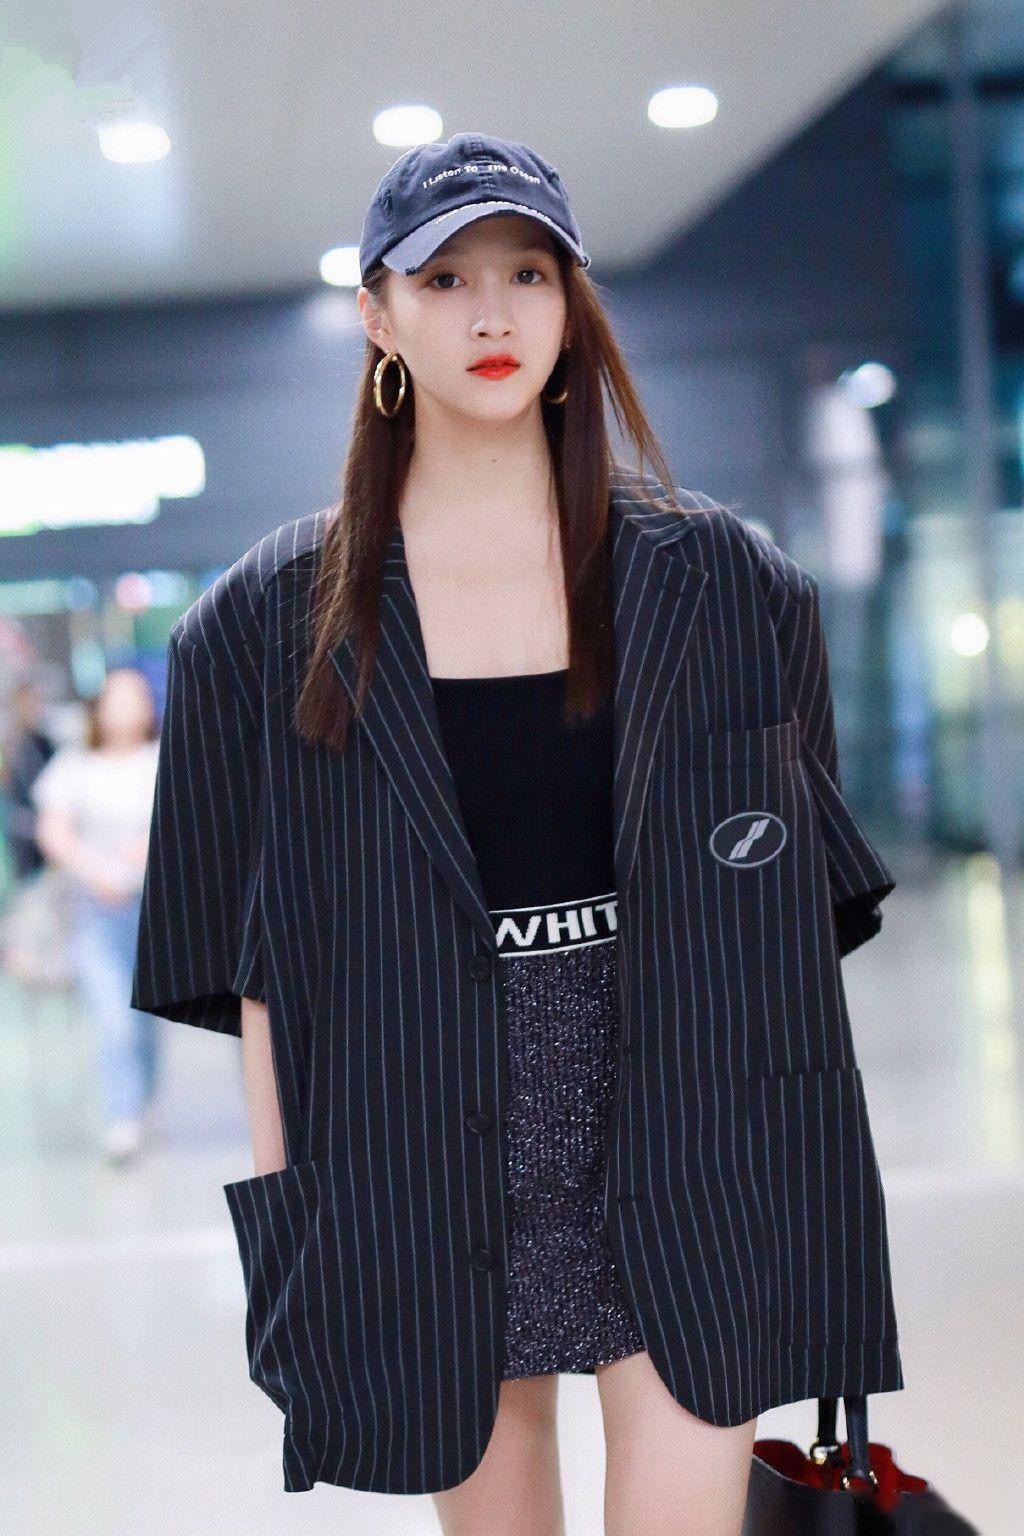 2019年8月13日,关晓彤现身上海机场,当天她身穿黑色条纹宽松西装内搭